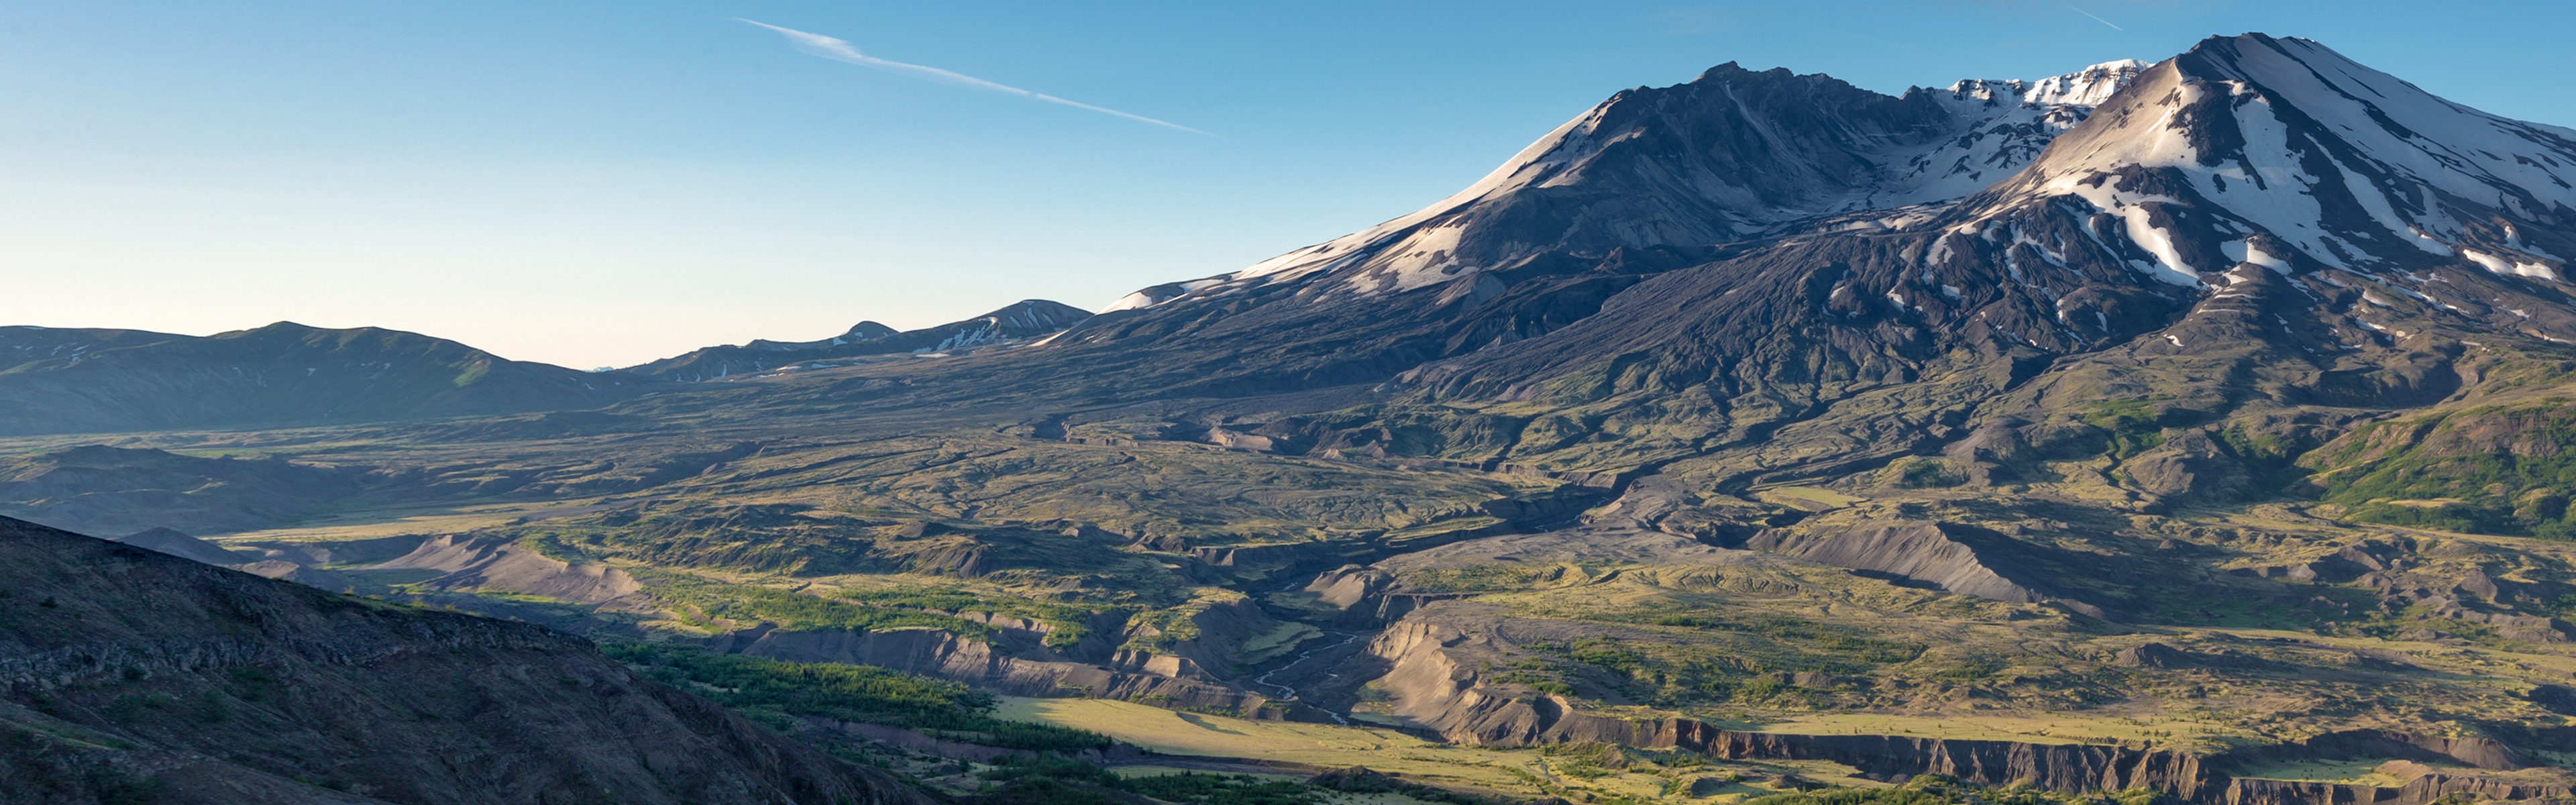 Mount St. Helens, Download wallpapers, 3840x1200 Dual Screen Desktop